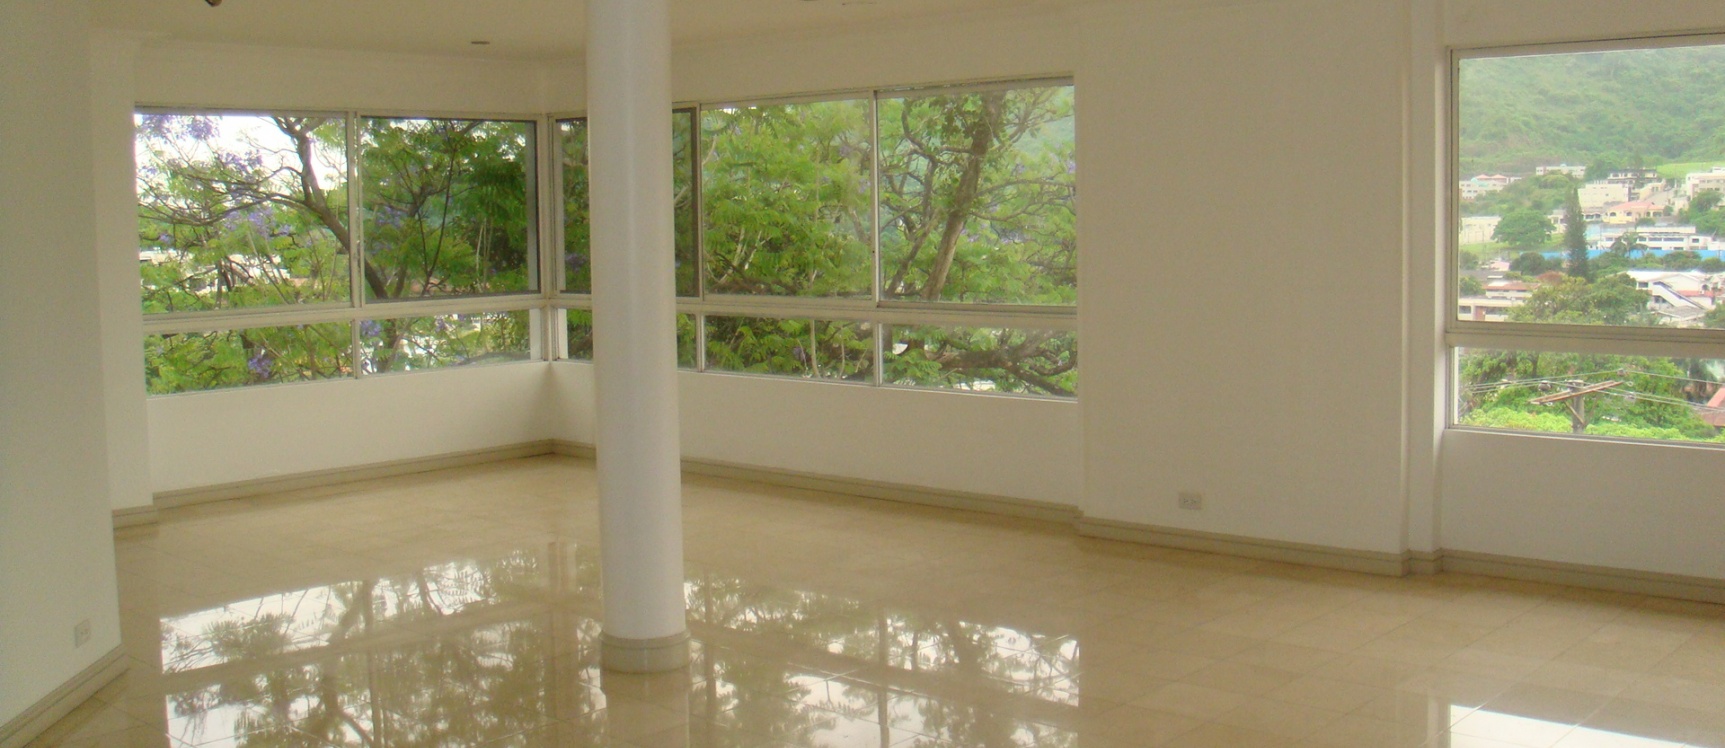 GeoBienes - Departamento en Alquiler en los Ceibos - de Oportunidad - Plusvalia Guayaquil Casas de venta y alquiler Inmobiliaria Ecuador